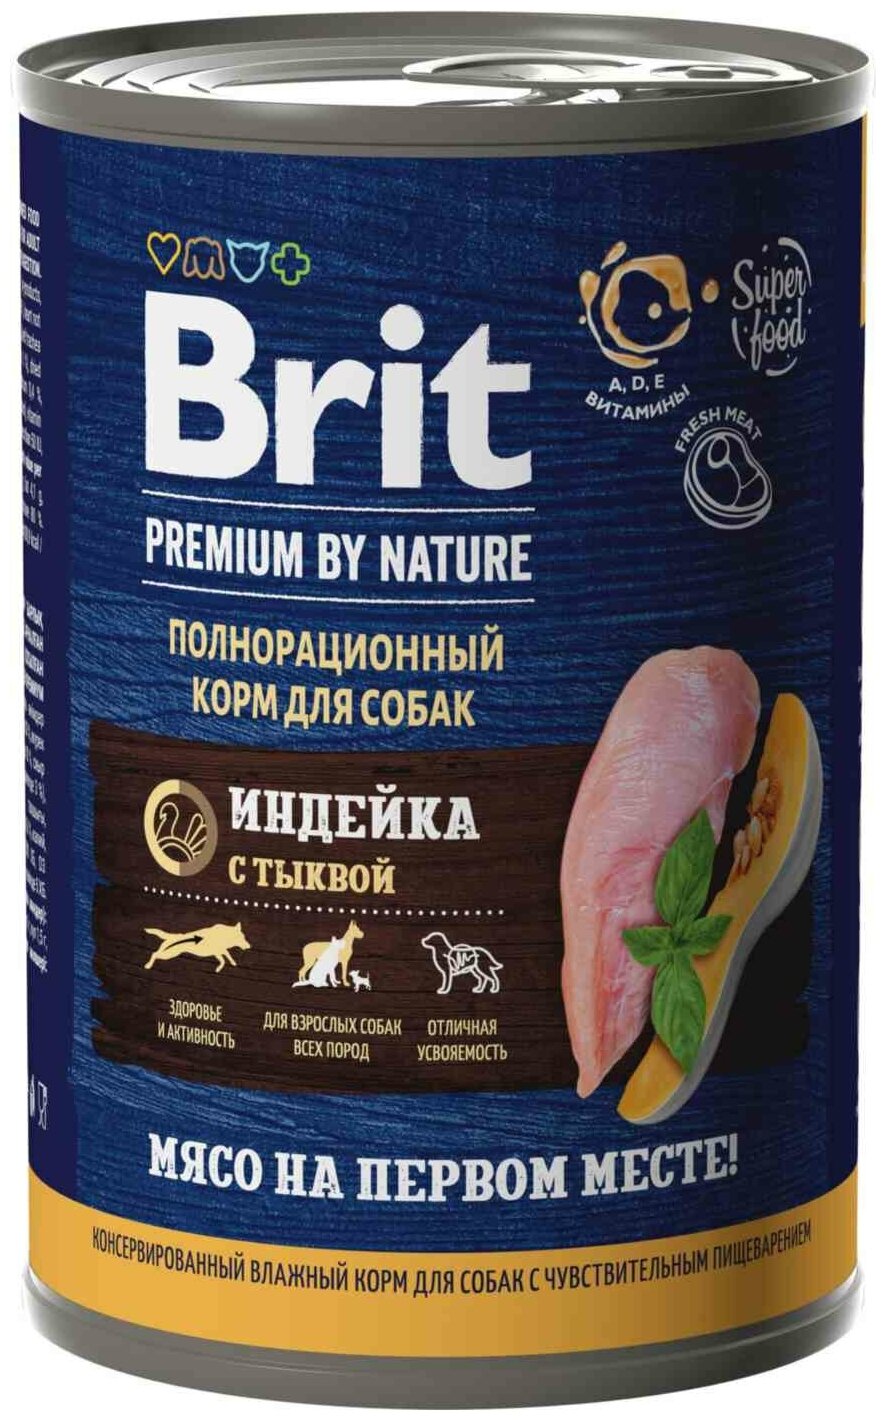 Брит Премиум by Nature 410г индейка тыква консервы для собак всех пород с чув. Пищевар